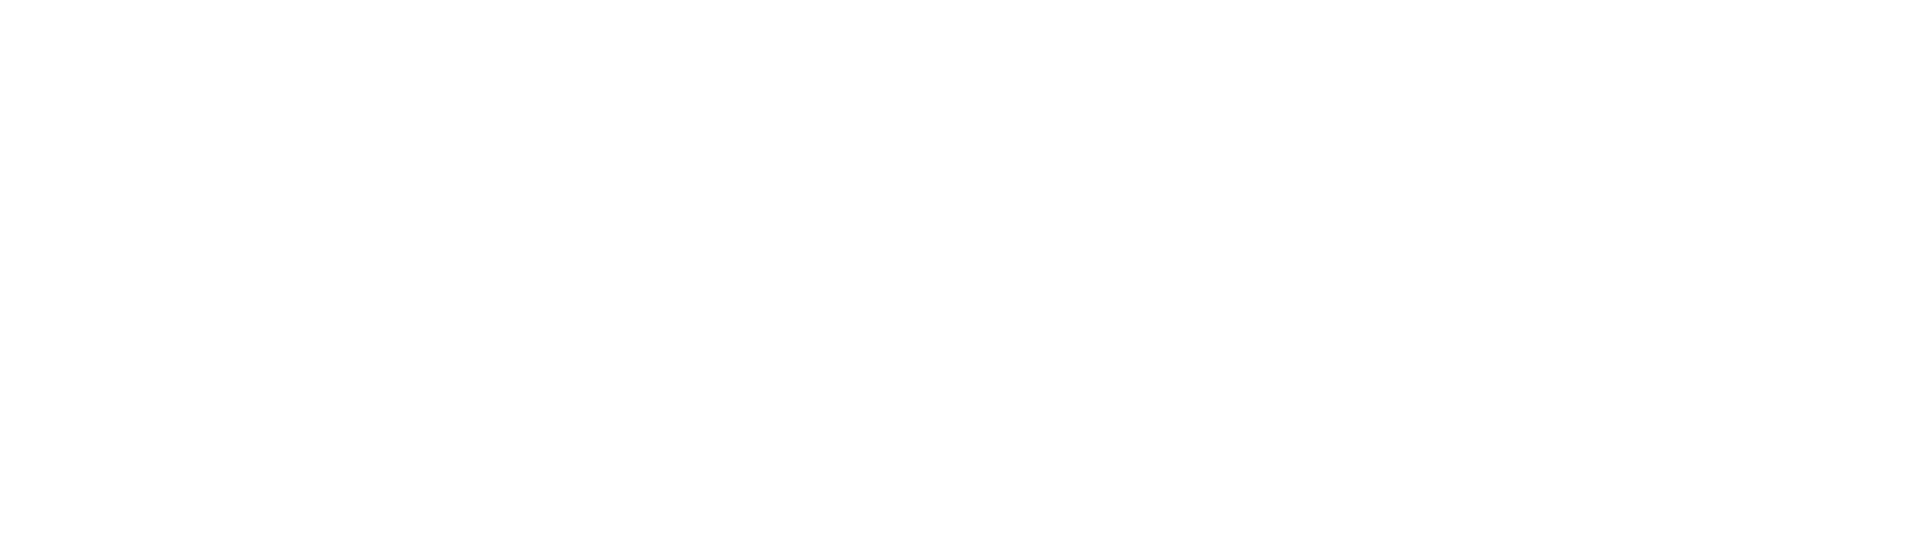 LOGO-CCLD-instit-fev-2021-BLANC